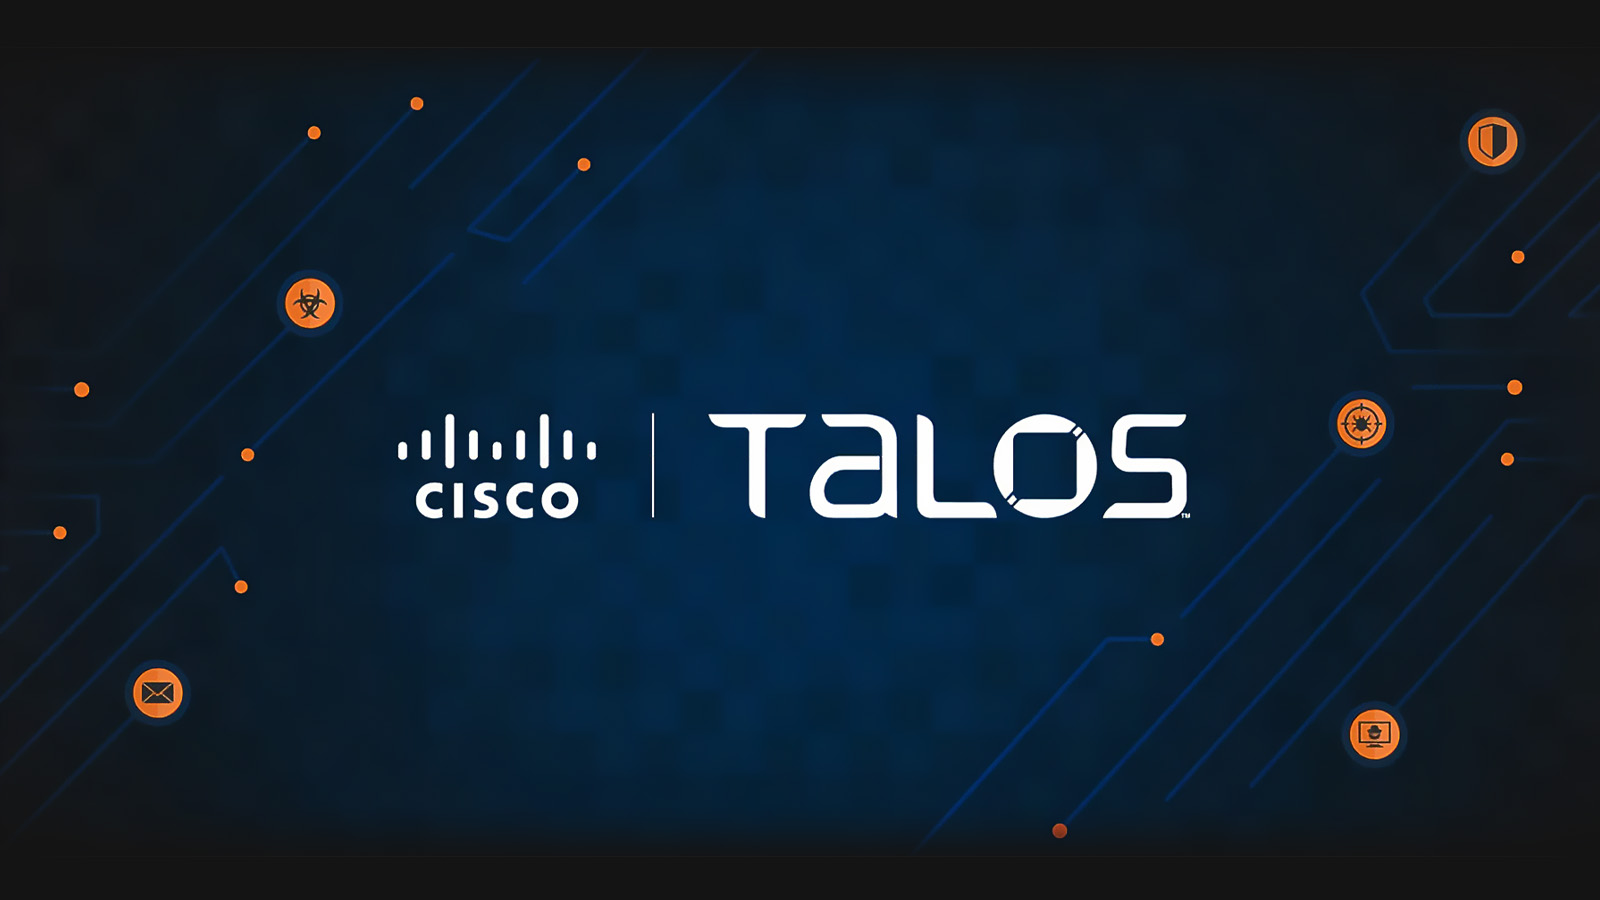 Cisco Talos: A Summary Explanation